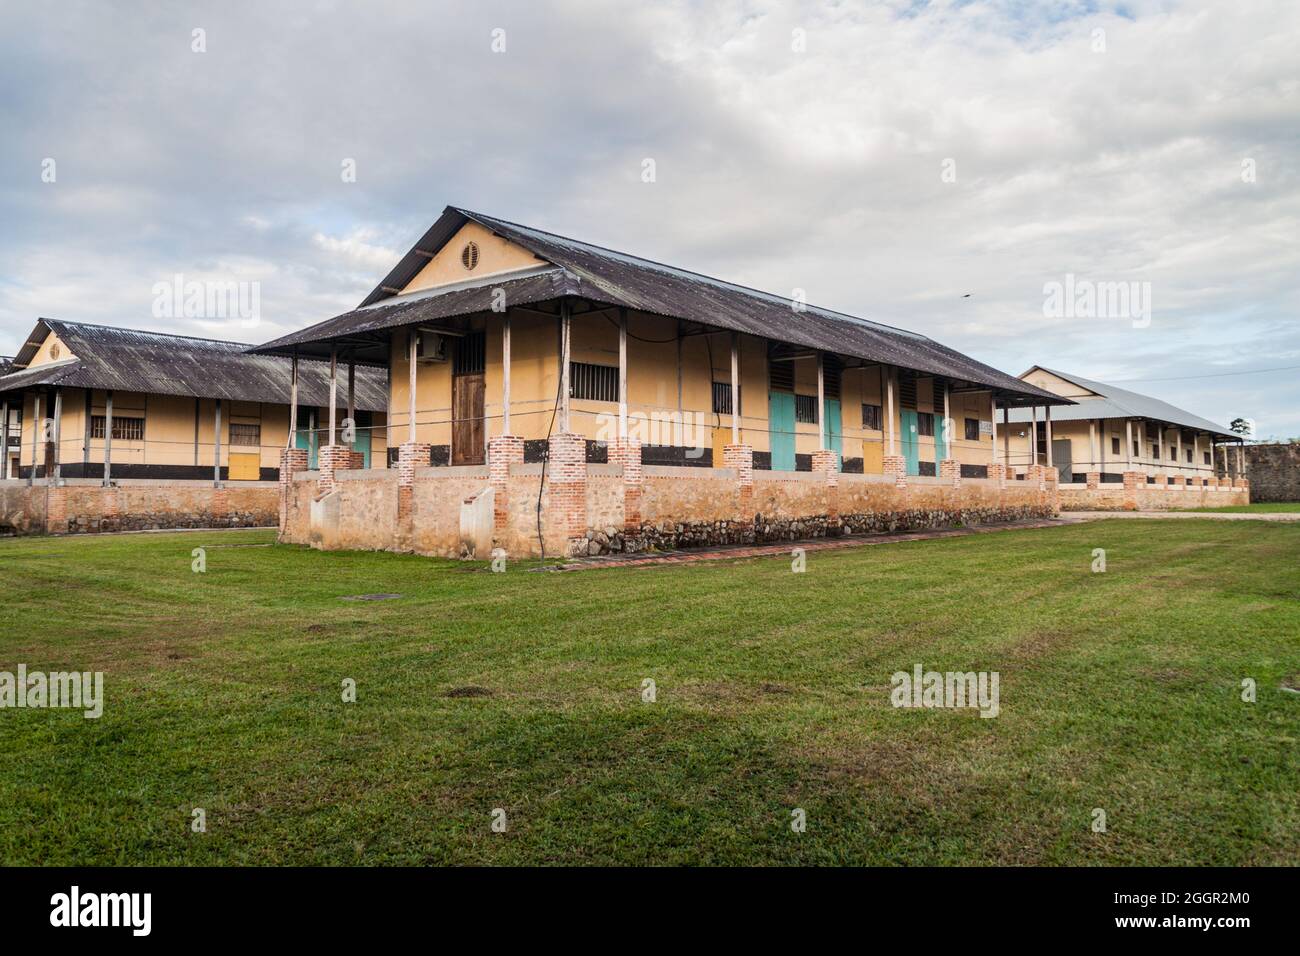 Buildings of a prison Camp de la Transportation in St Laurent du Maroni, French Guiana Stock Photo